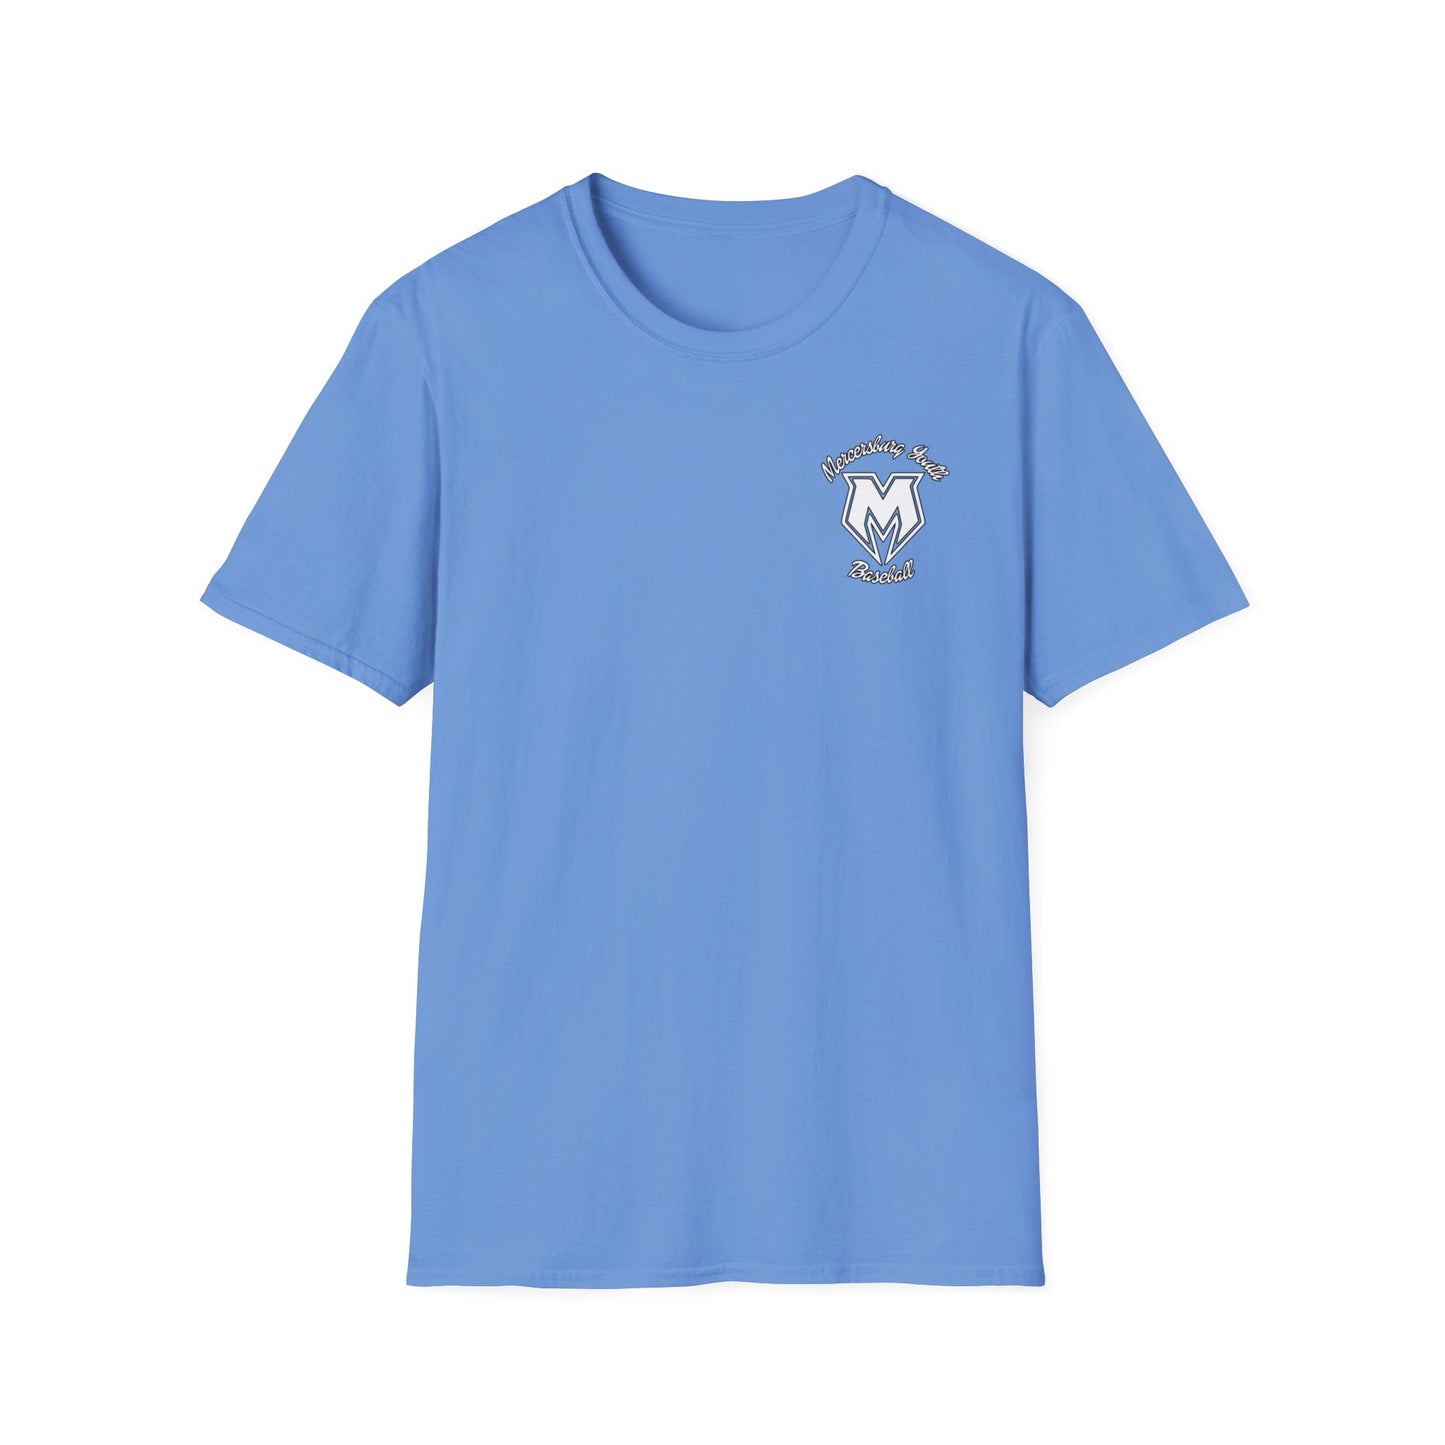 M Burg baseball Unisex Softstyle T-Shirt